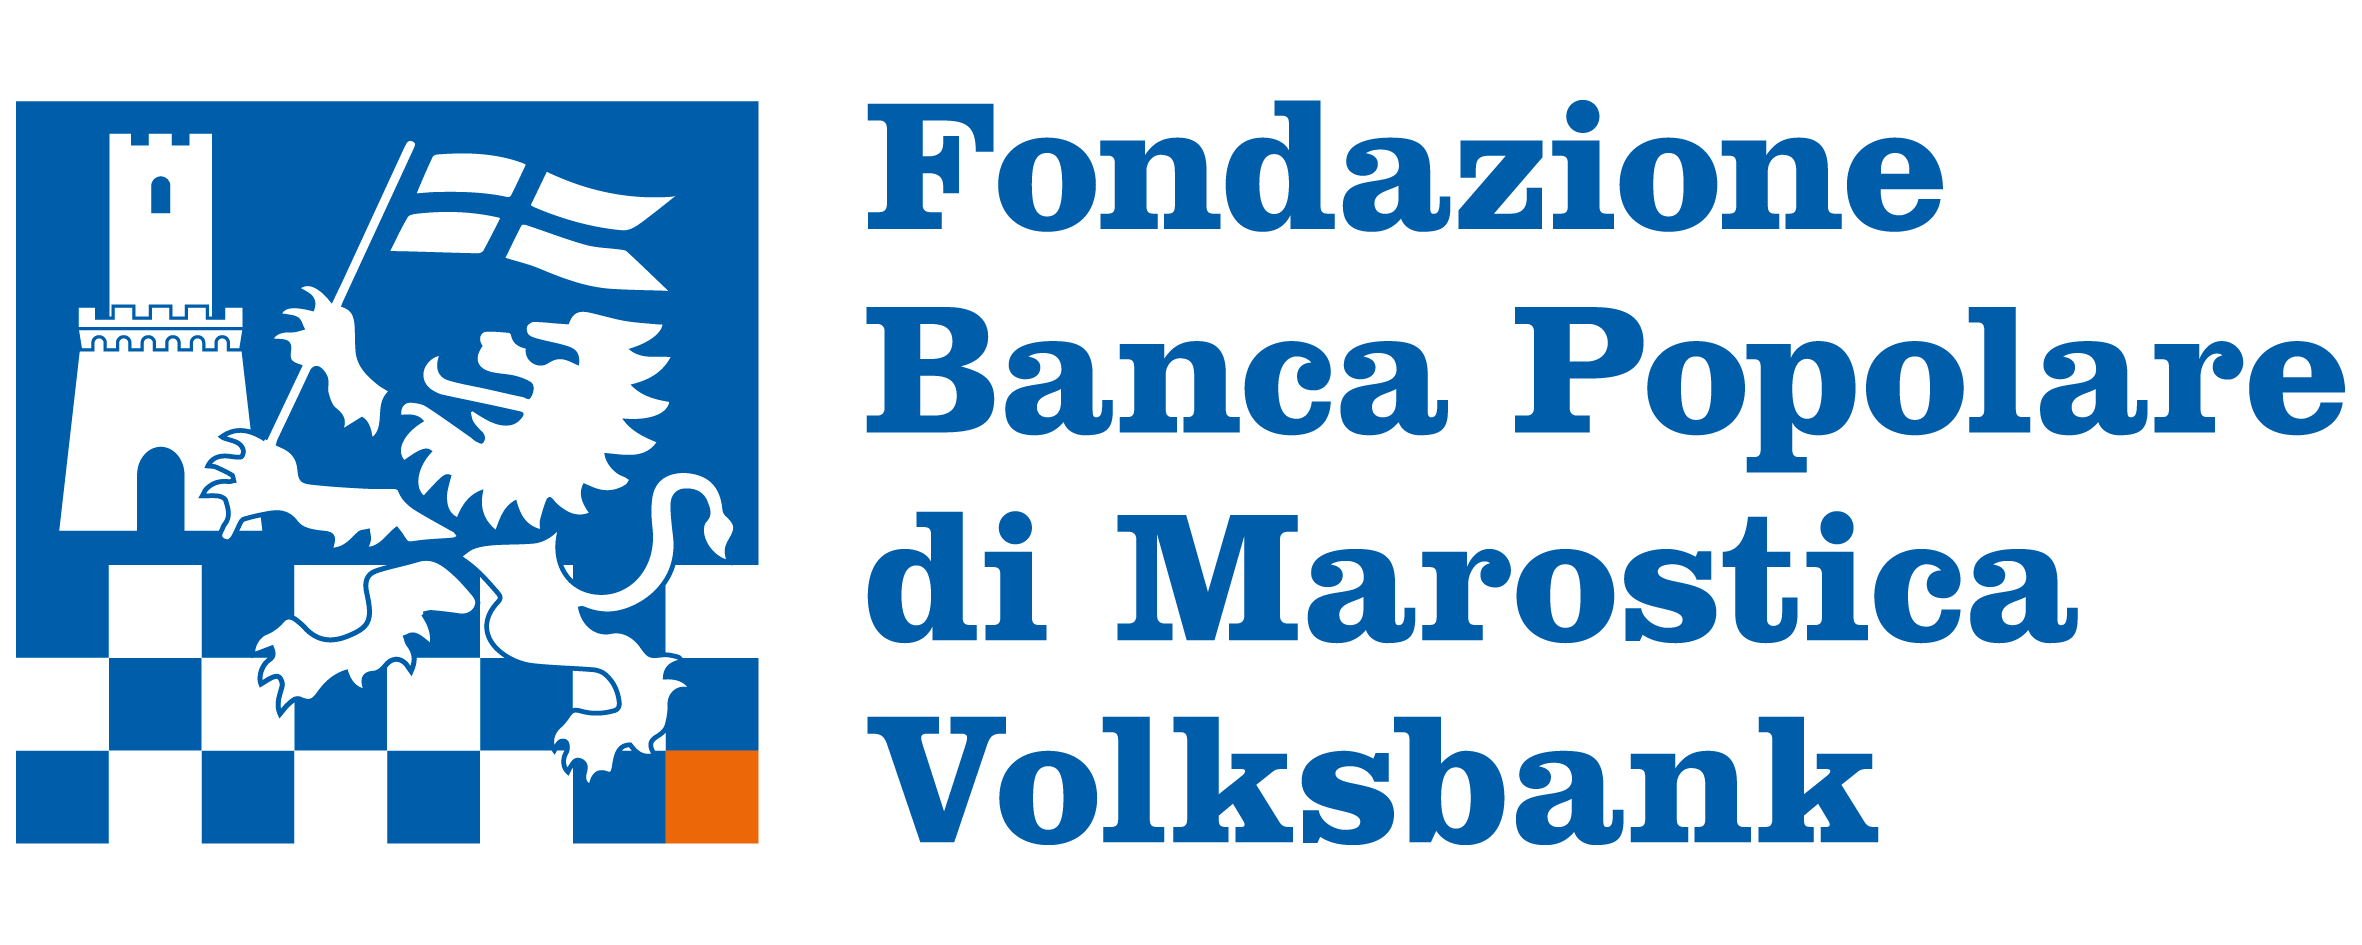 Volksbank Logo Fondazione Popolare Marostica 2018